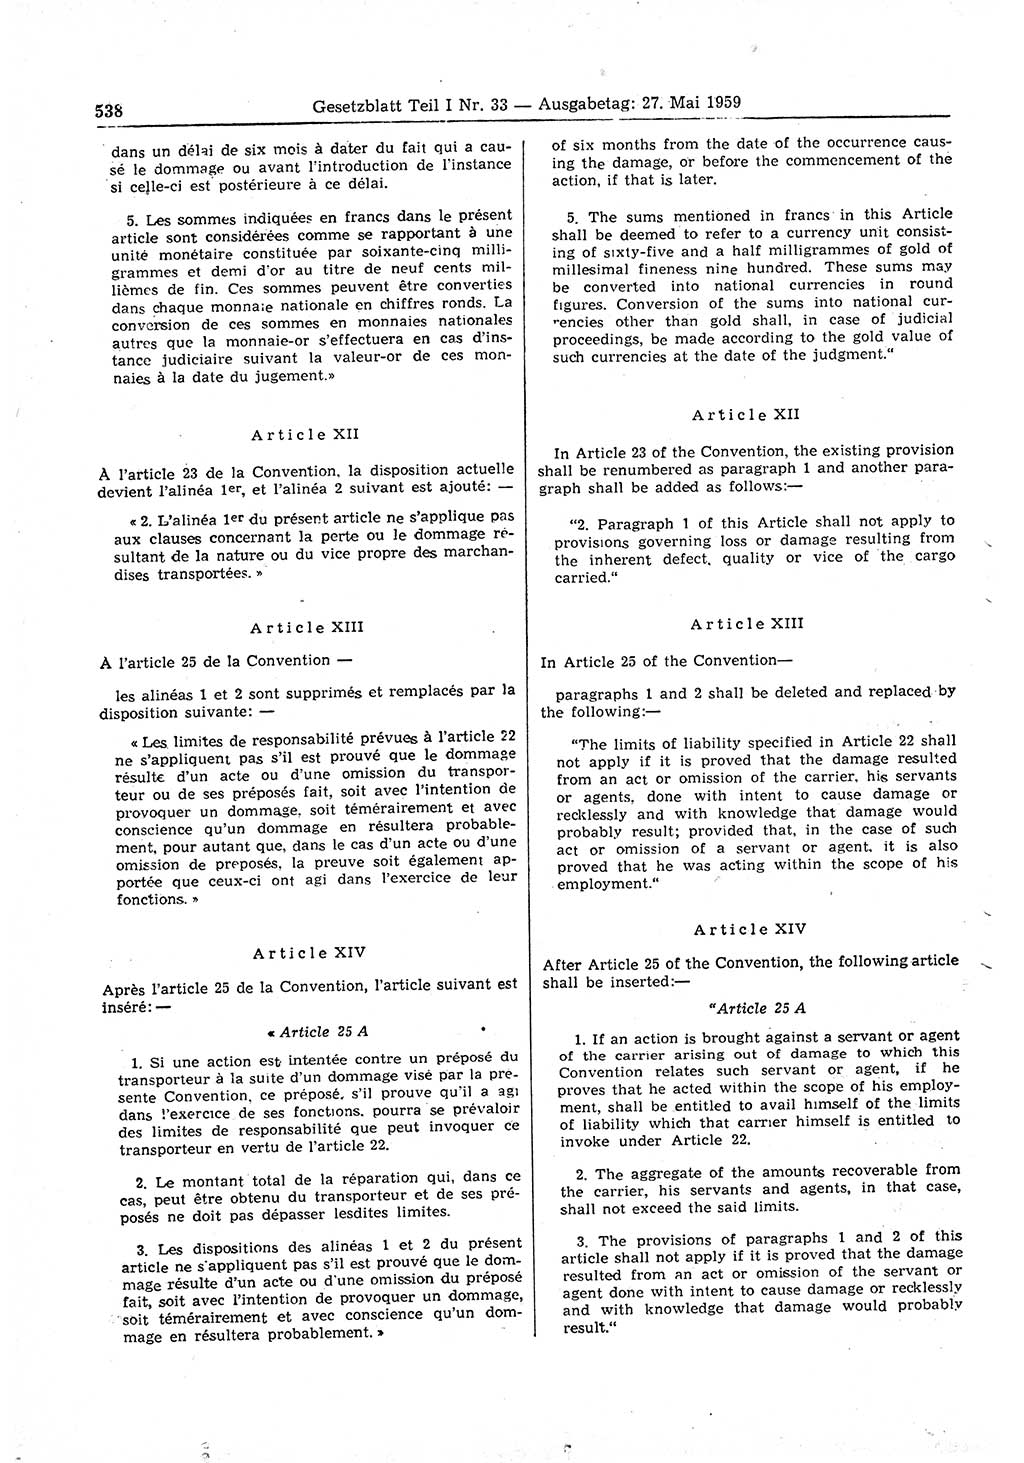 Gesetzblatt (GBl.) der Deutschen Demokratischen Republik (DDR) Teil Ⅰ 1959, Seite 538 (GBl. DDR Ⅰ 1959, S. 538)